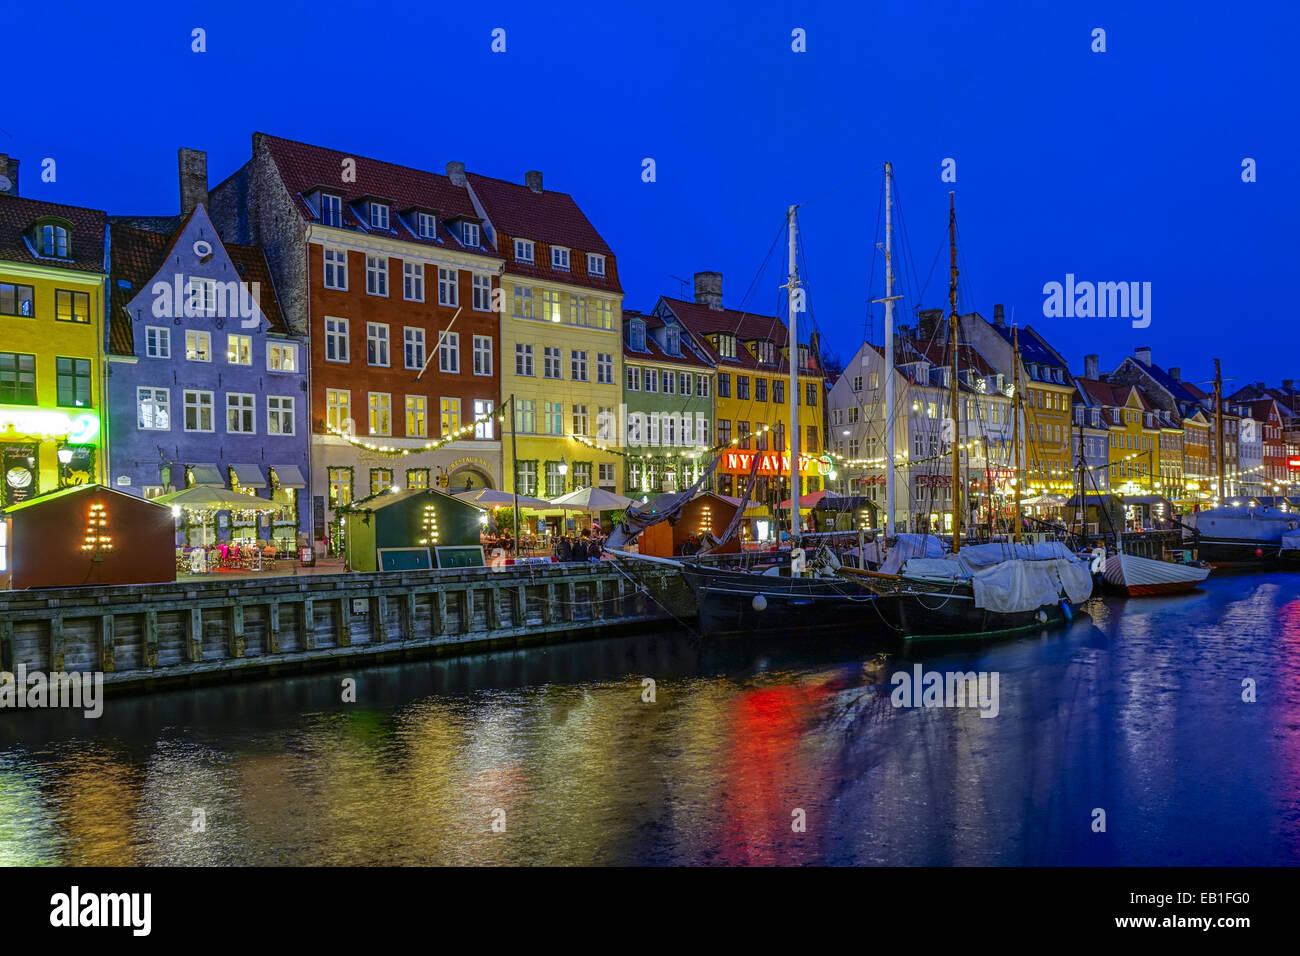 Weihnachtsmarkt am Nyhavn bei Nacht, Kopenhagen, Dänemark, Europa Foto Stock